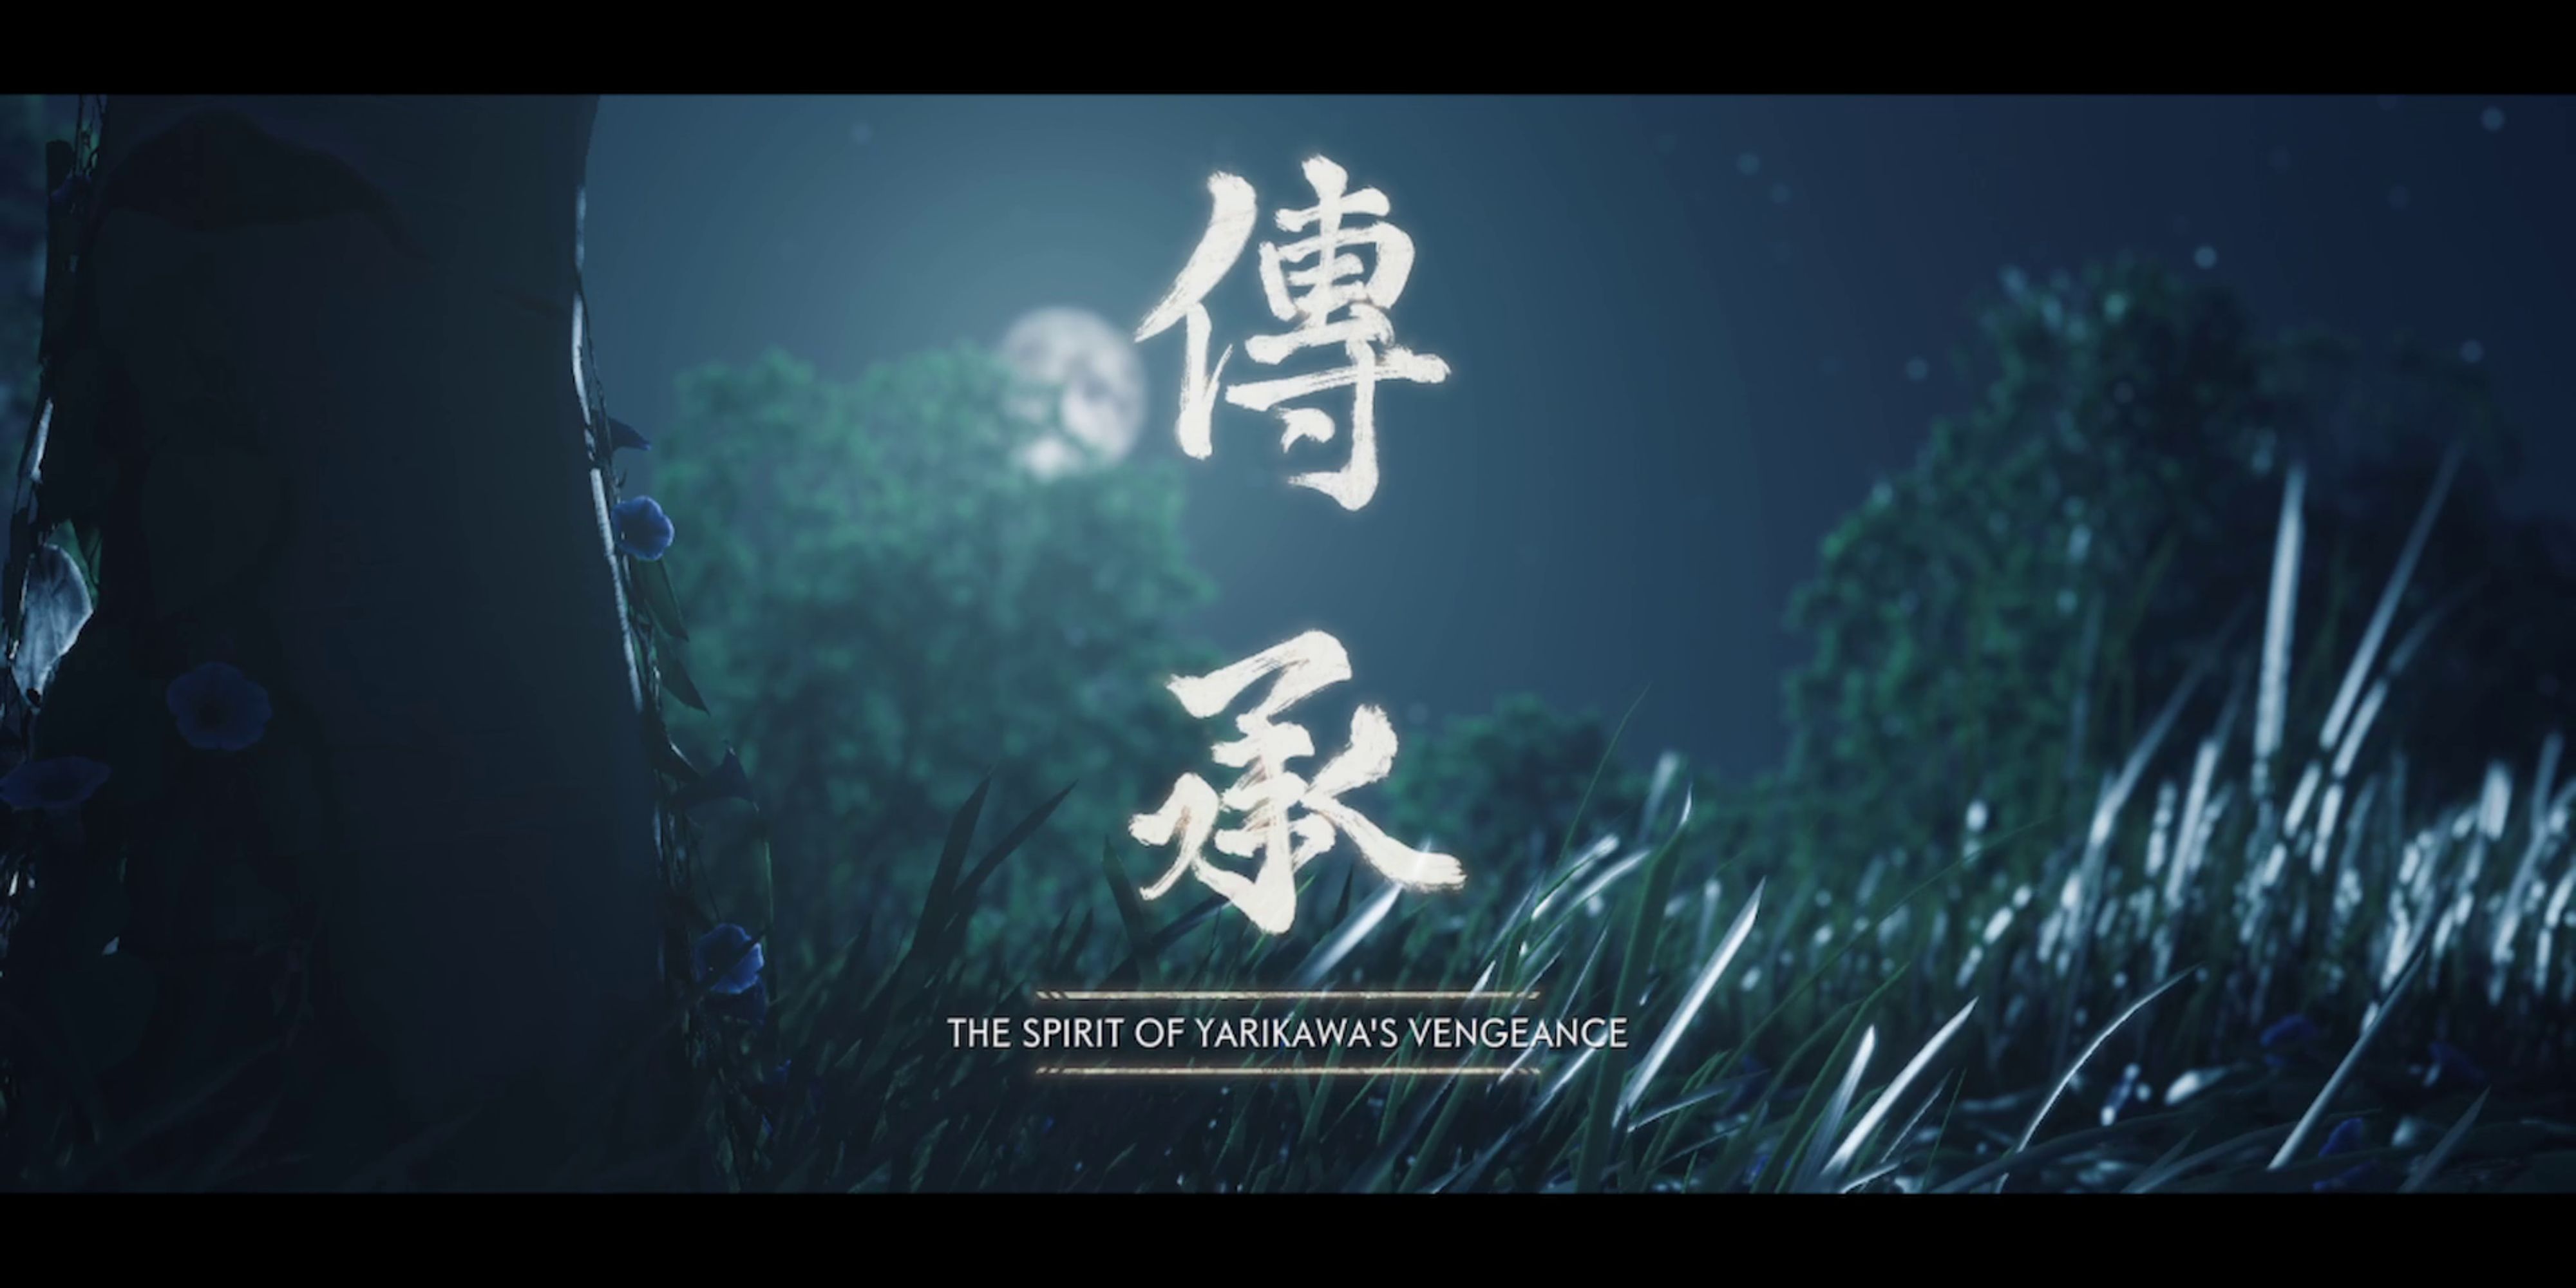 the spirit of yarikawa's vengeance start in ghost of tsushima